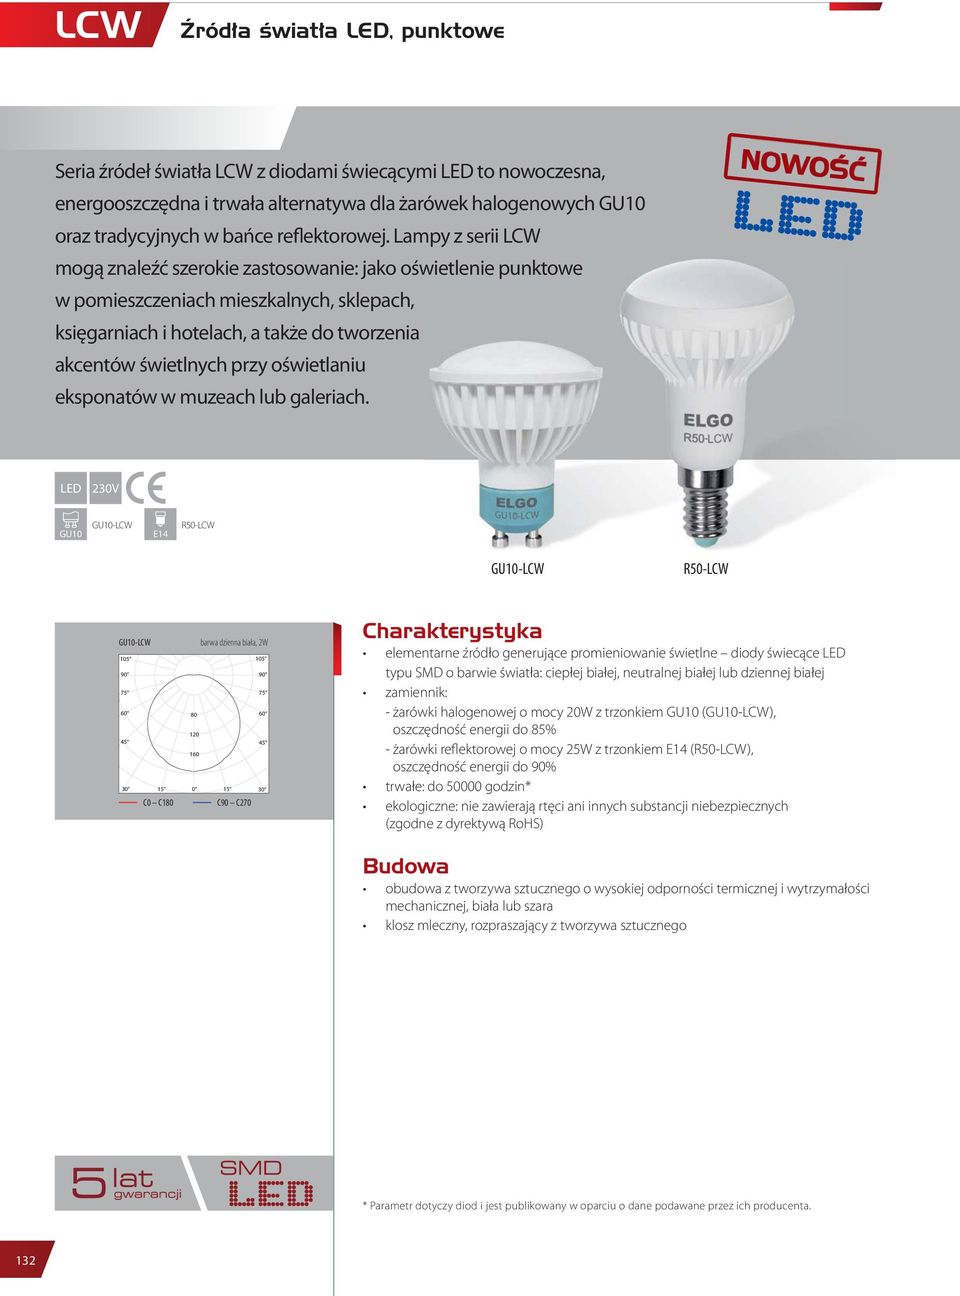 Lampy z serii LCW mogą znaleźć szerokie zastosowanie: jako oświetlenie punktowe w pomieszczeniach mieszkalnych, sklepach, księgarniach i hotelach, a także do tworzenia akcentów świetlnych przy